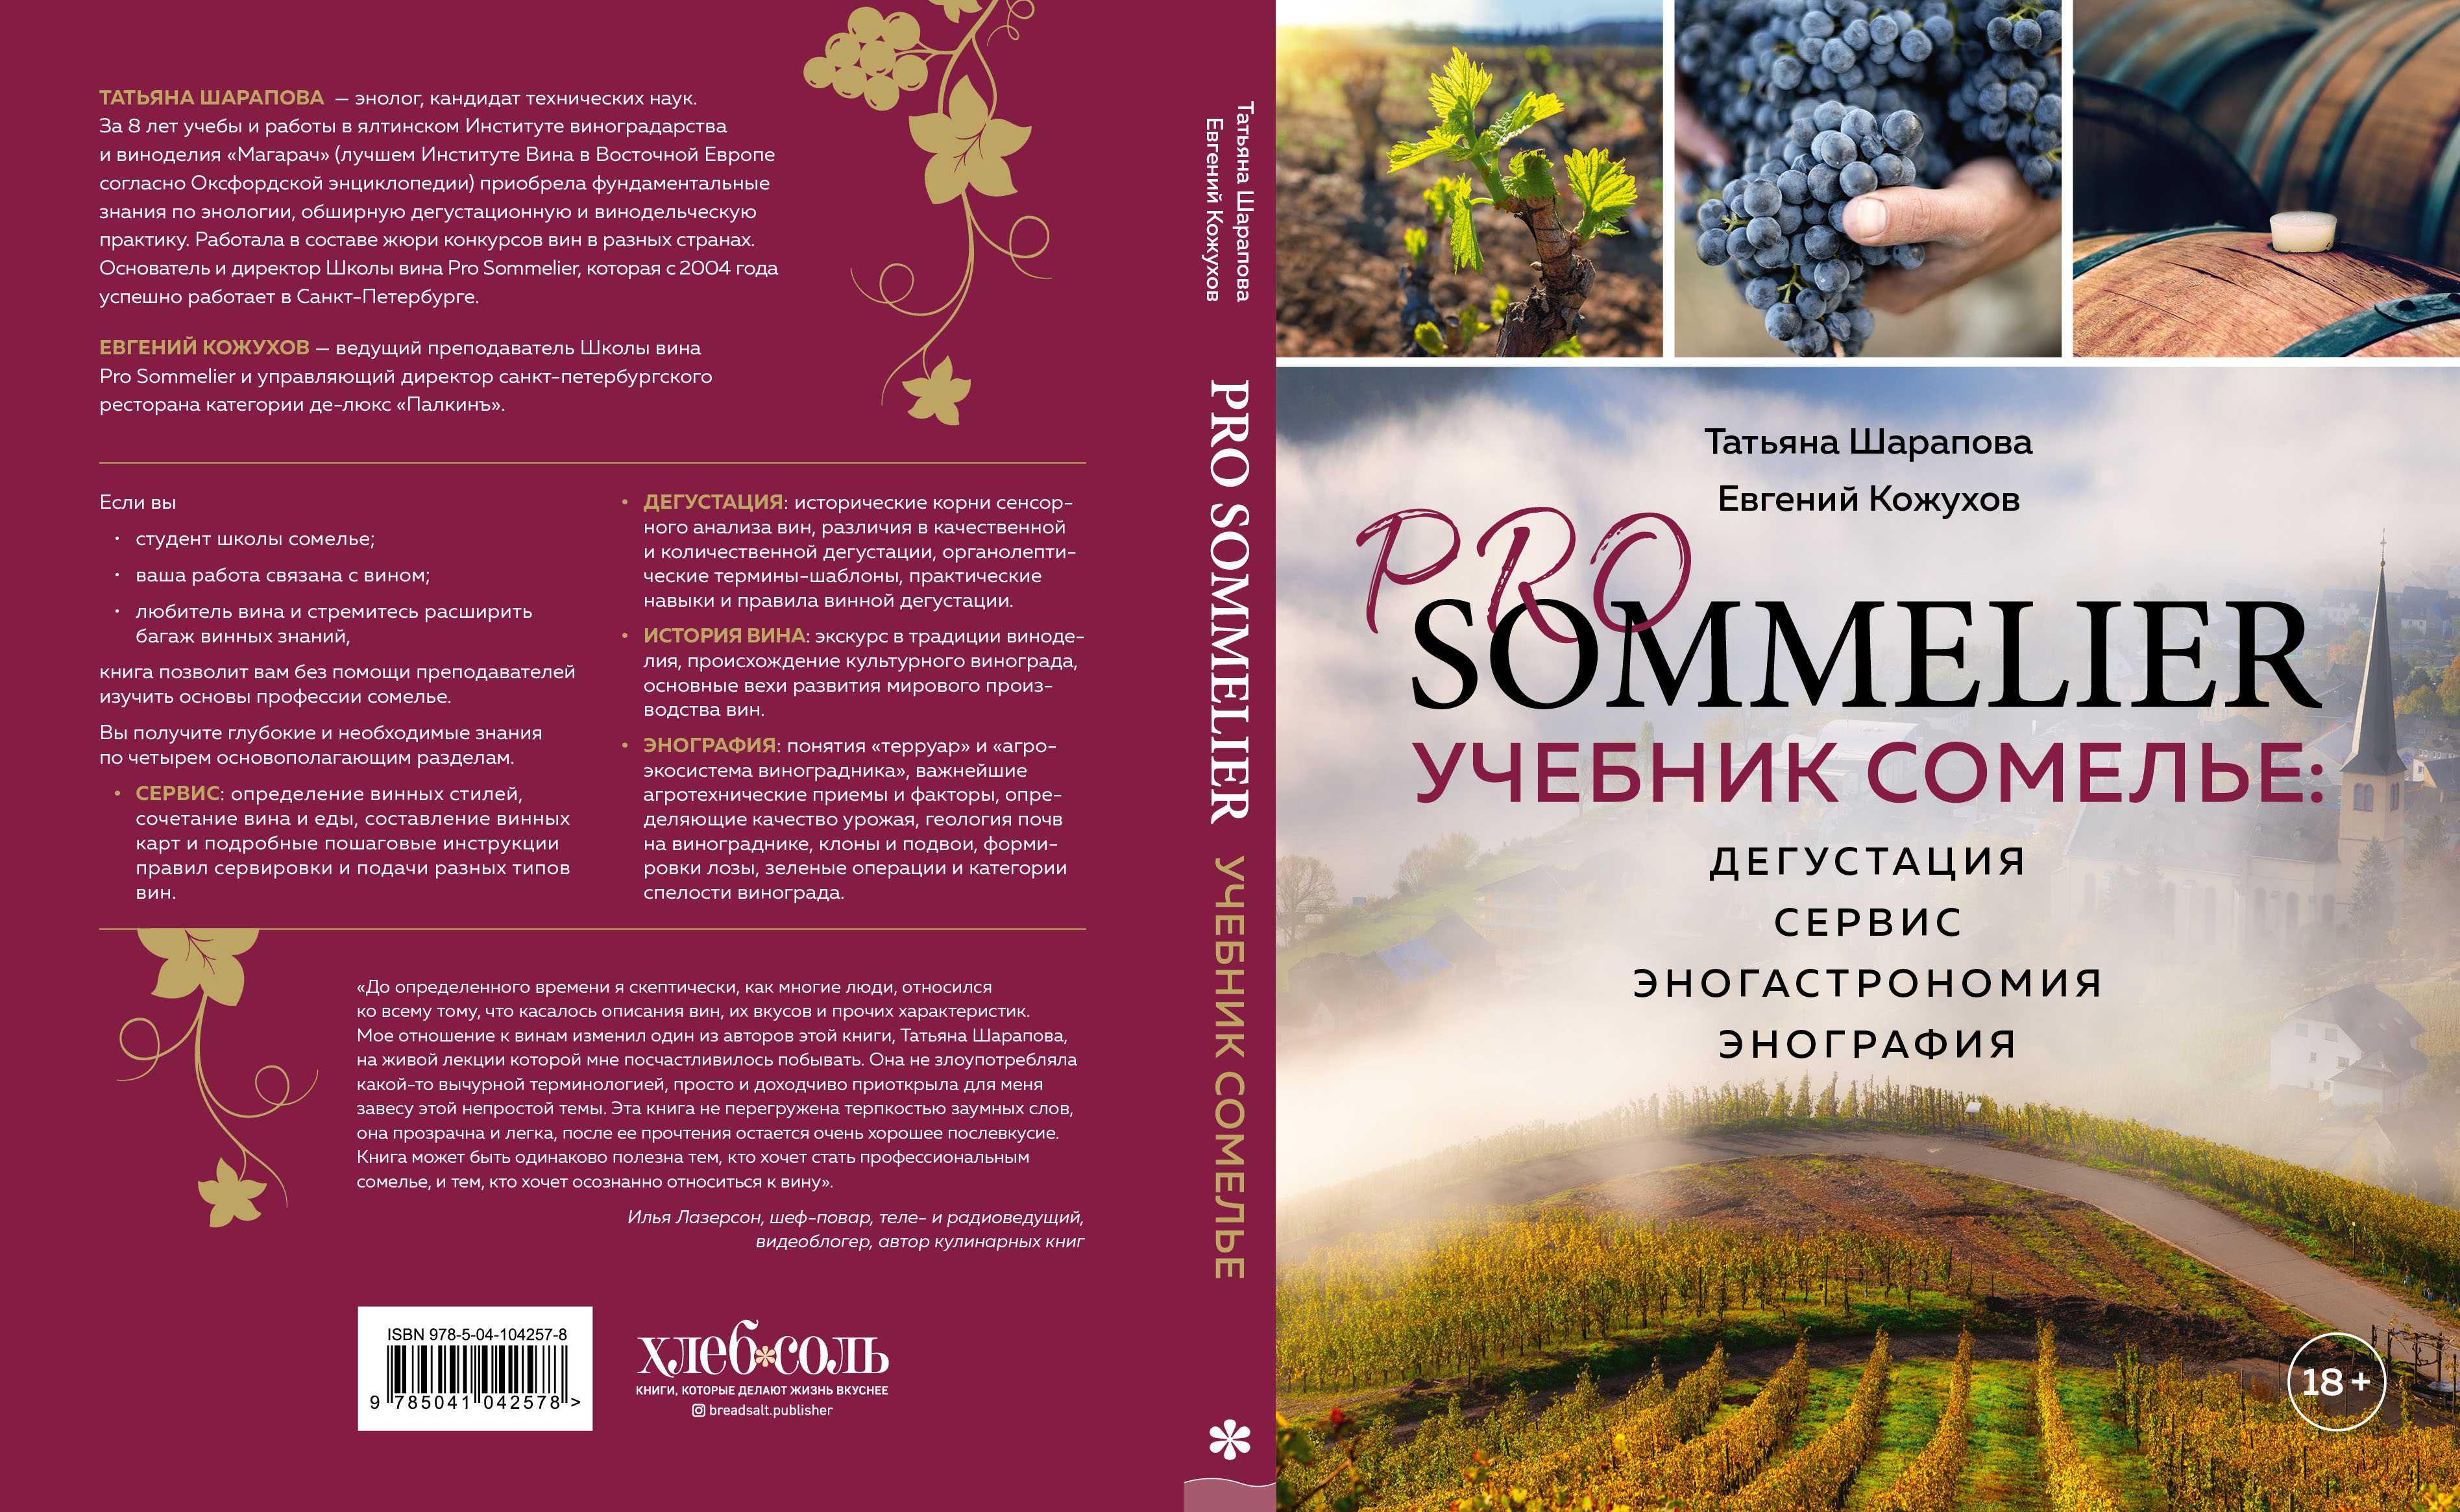 Отрывок из книги татьяны шараповой pro sommelier о почве для виноделия